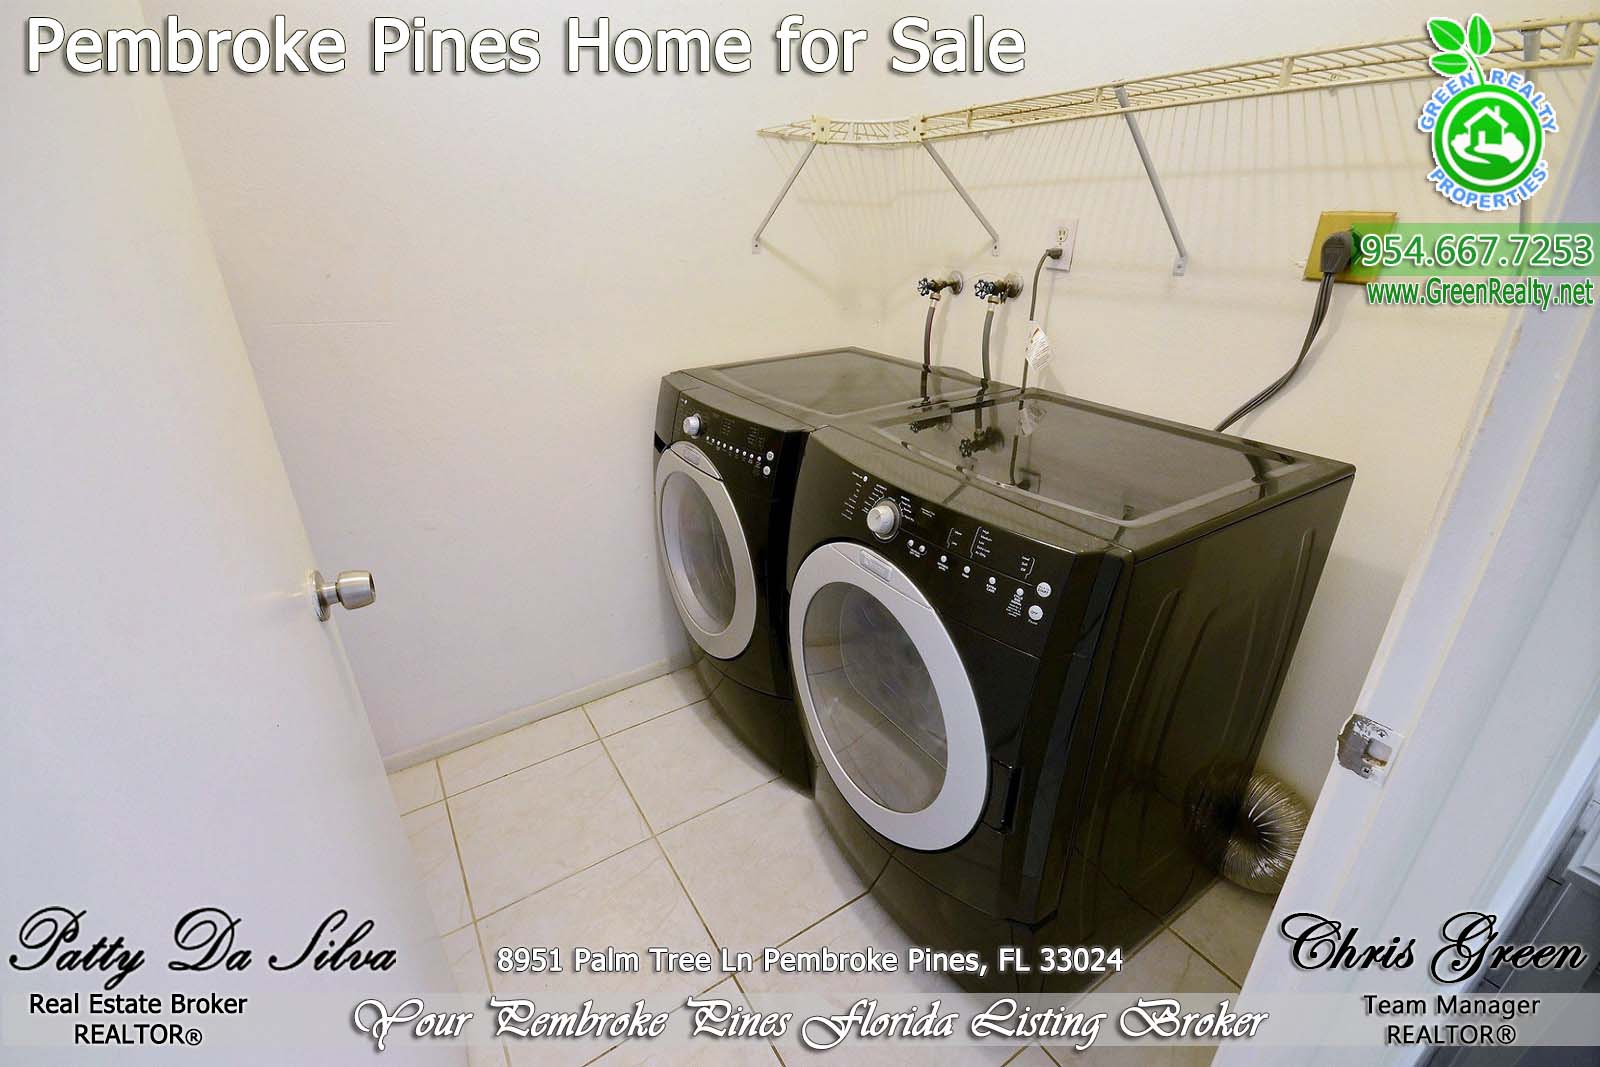 Pembroke Pines Homes For Sale - 8951 Palm Tree Lane (16)